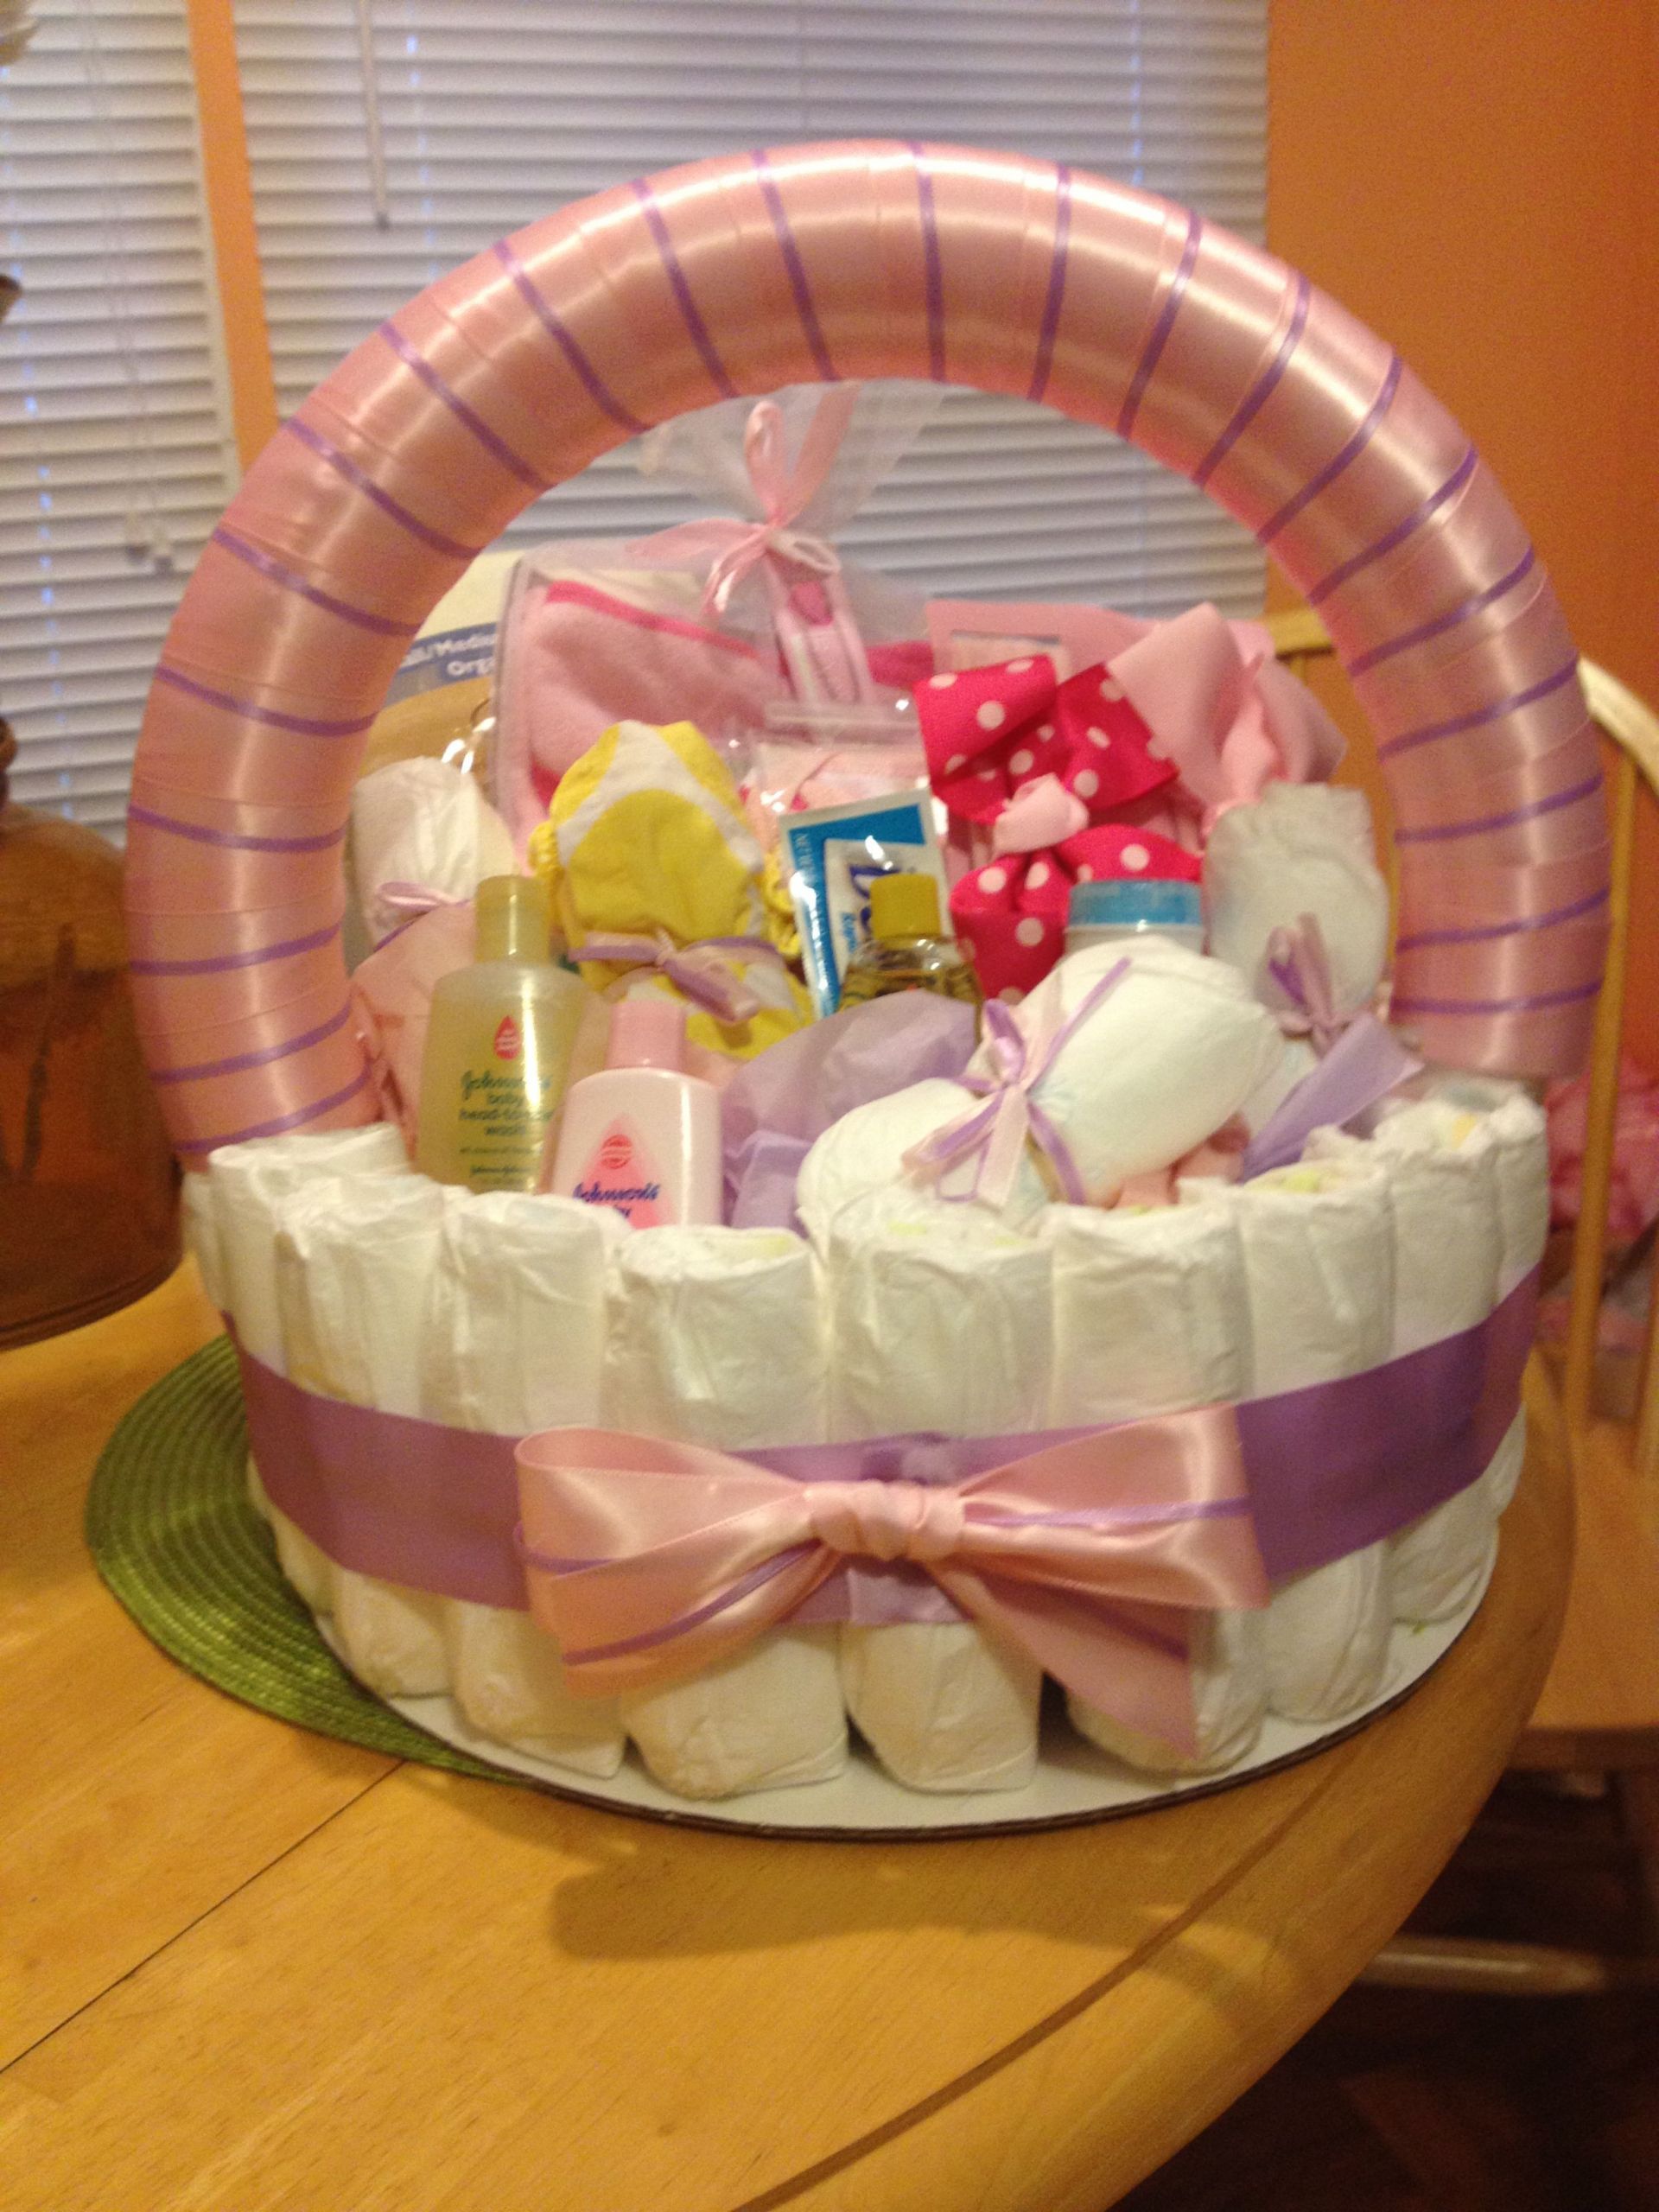 Diaper Gift Ideas For Baby Shower
 Diaper basket for a baby shower Gift Ideas